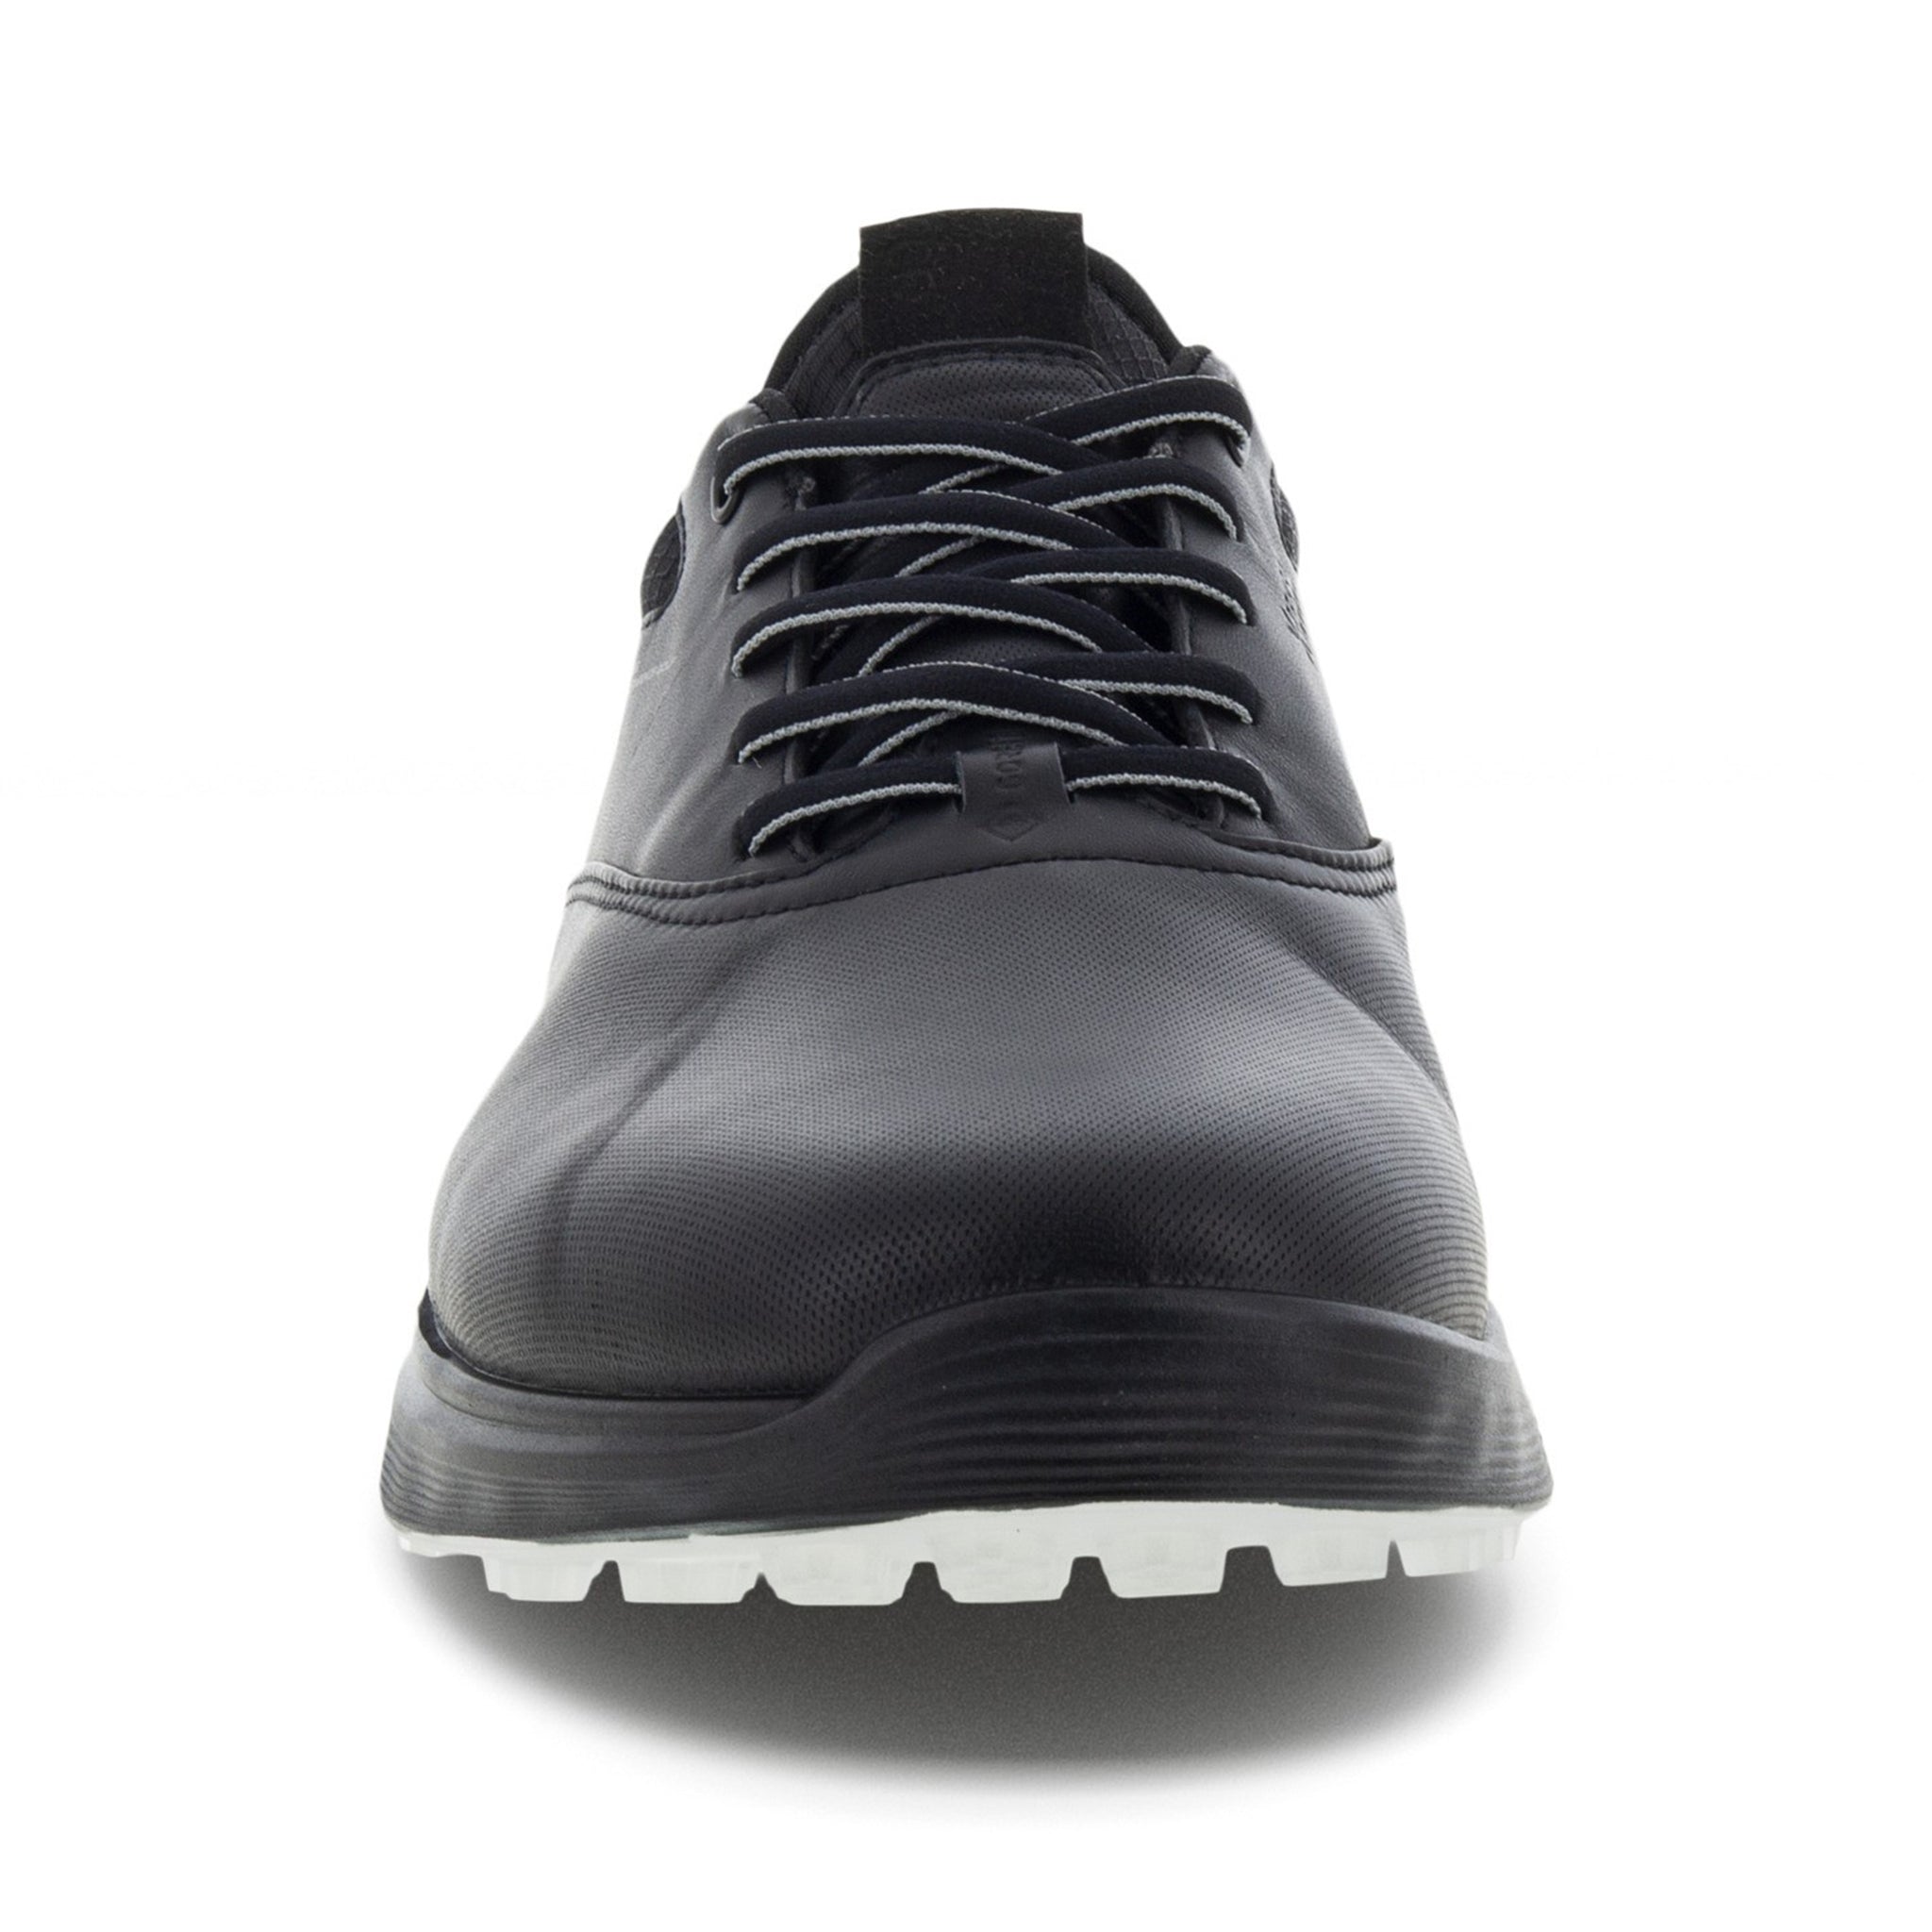 ecco-s-three-gore-tex-golf-shoes-102944-black-concrete-55433